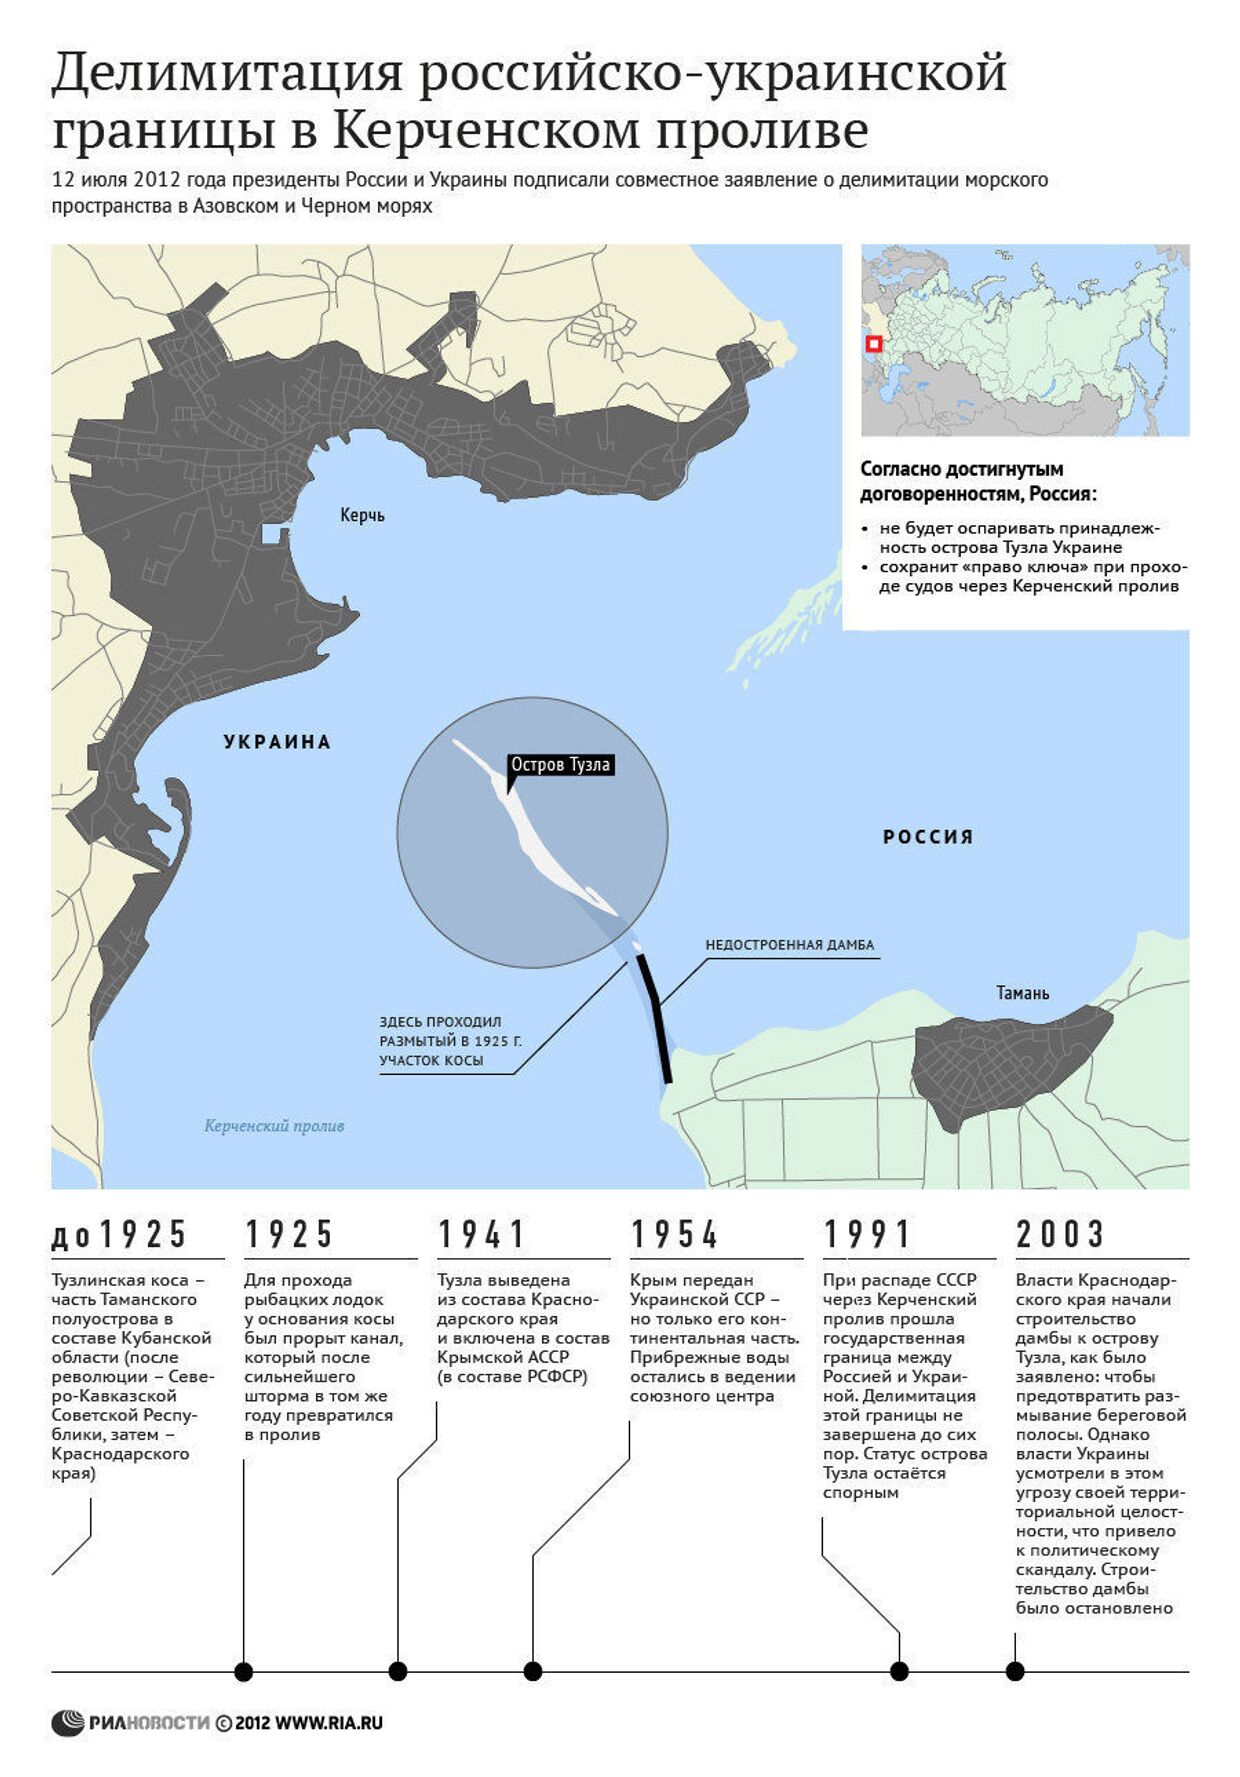 Делимитация российско-украинской границы в Керченском проливе